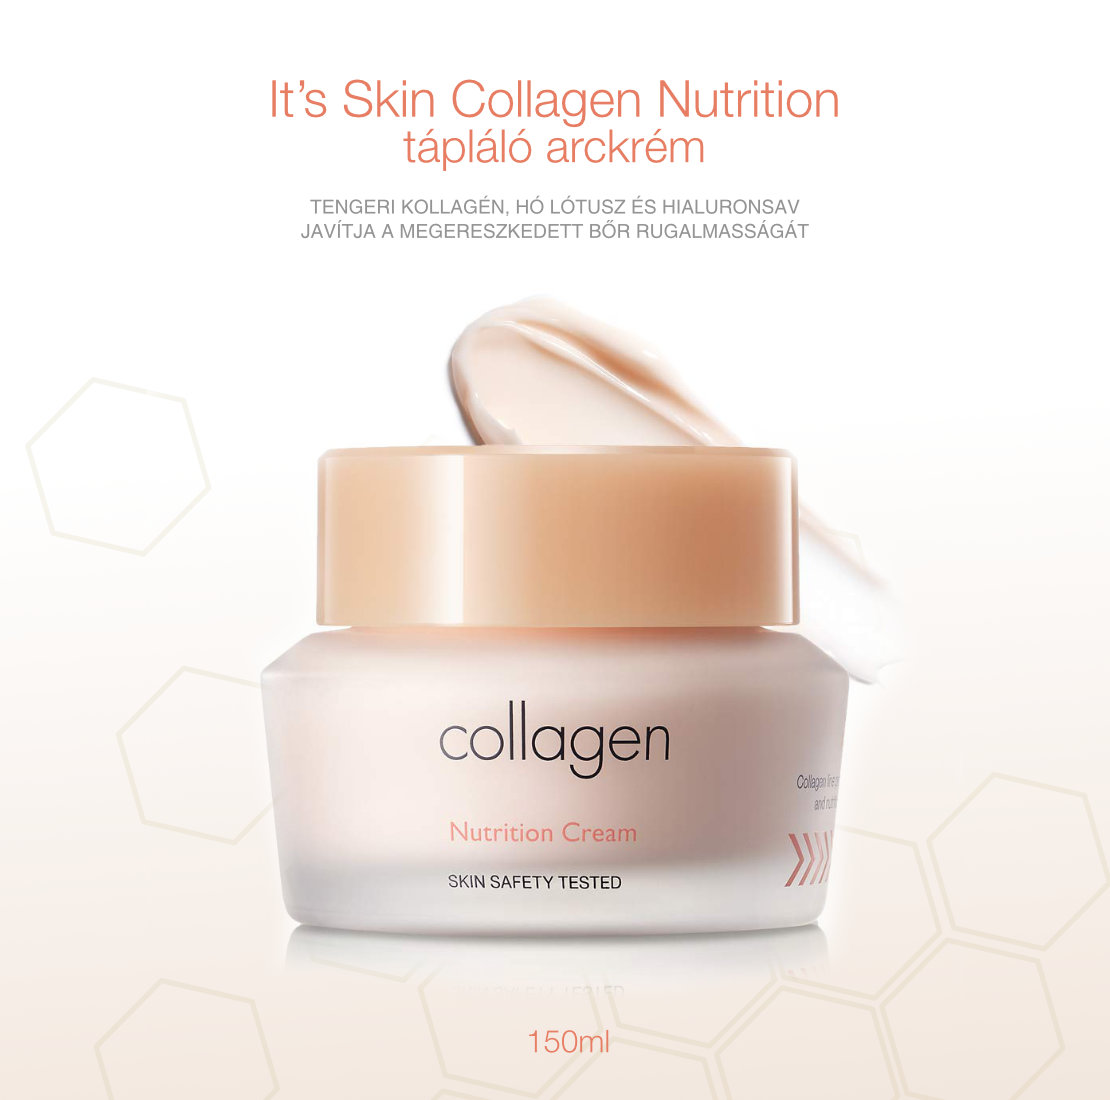 íIts-skin-collagen-nutrition-taplalo-arckrem